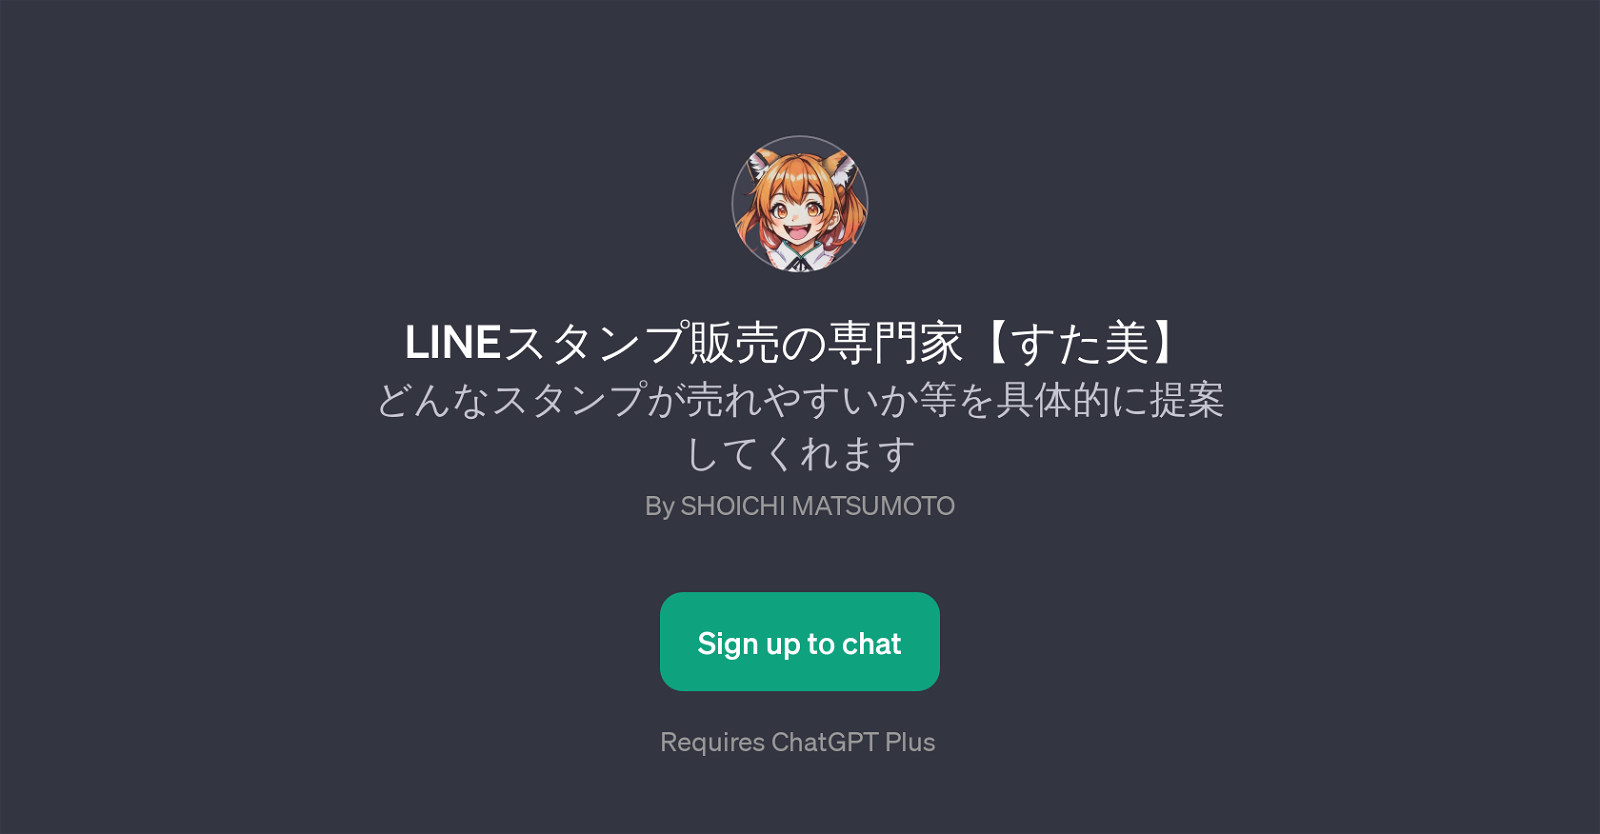 LINE website